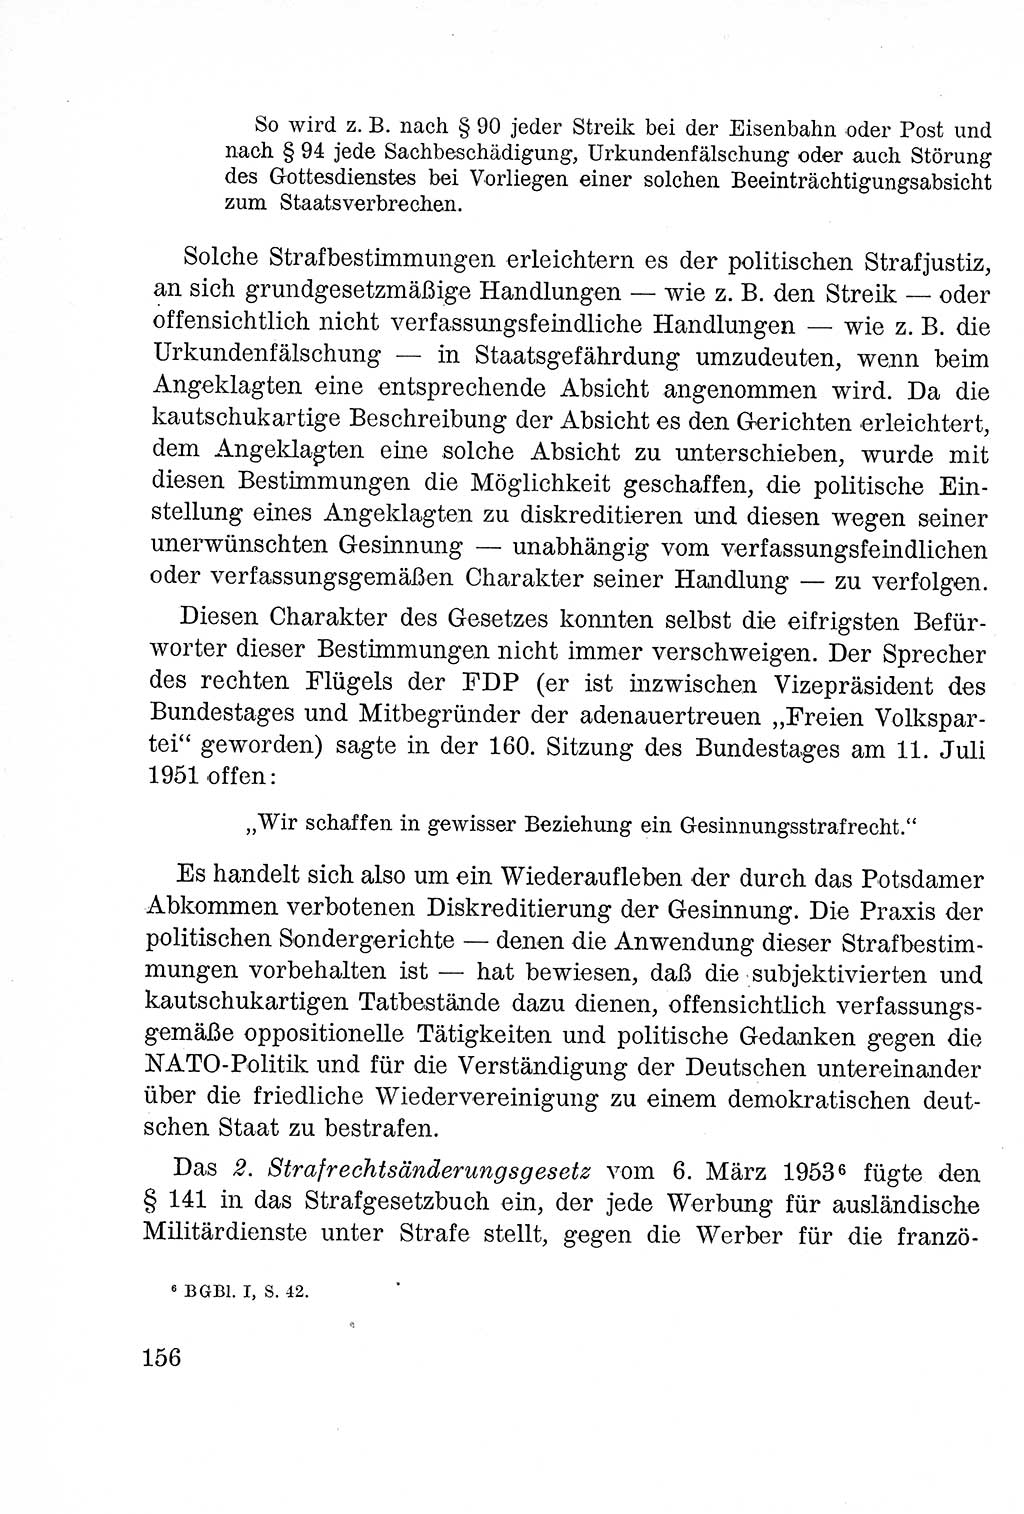 Lehrbuch des Strafrechts der Deutschen Demokratischen Republik (DDR), Allgemeiner Teil 1957, Seite 156 (Lb. Strafr. DDR AT 1957, S. 156)